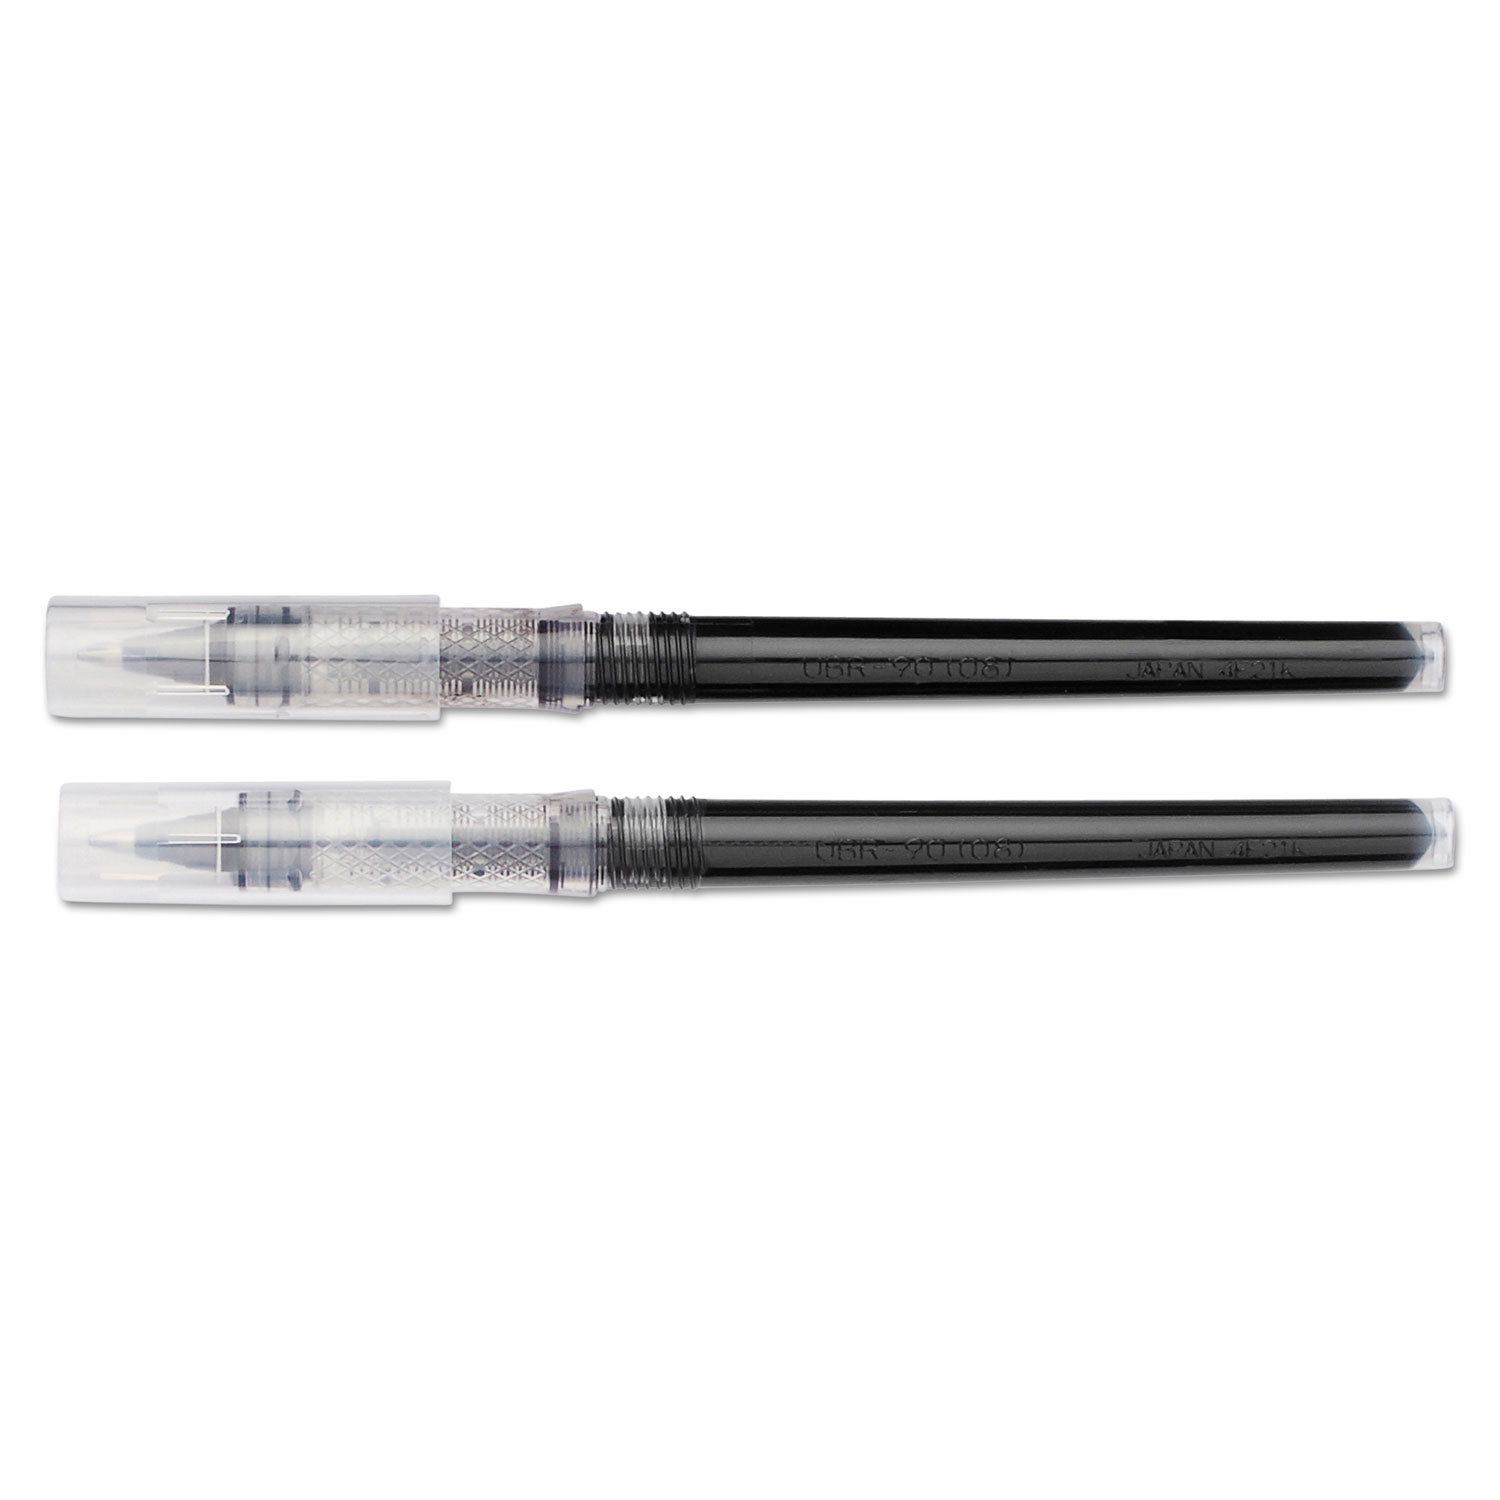 Refill for uni-ball Vision Elite Roller Ball Pens, Bold Point, Black Ink, 2/Pack